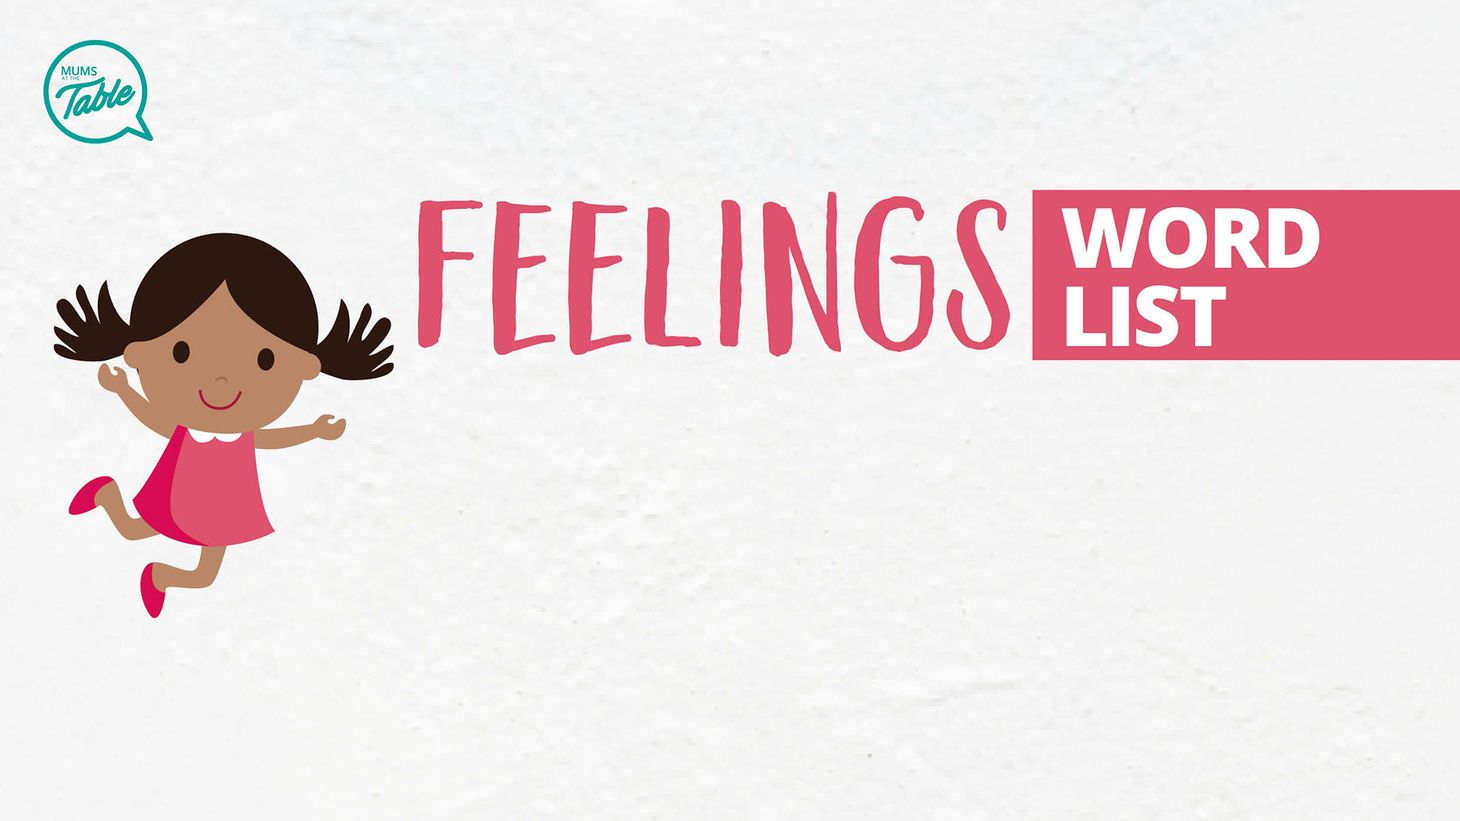 Feelings word list (Free Printable!)